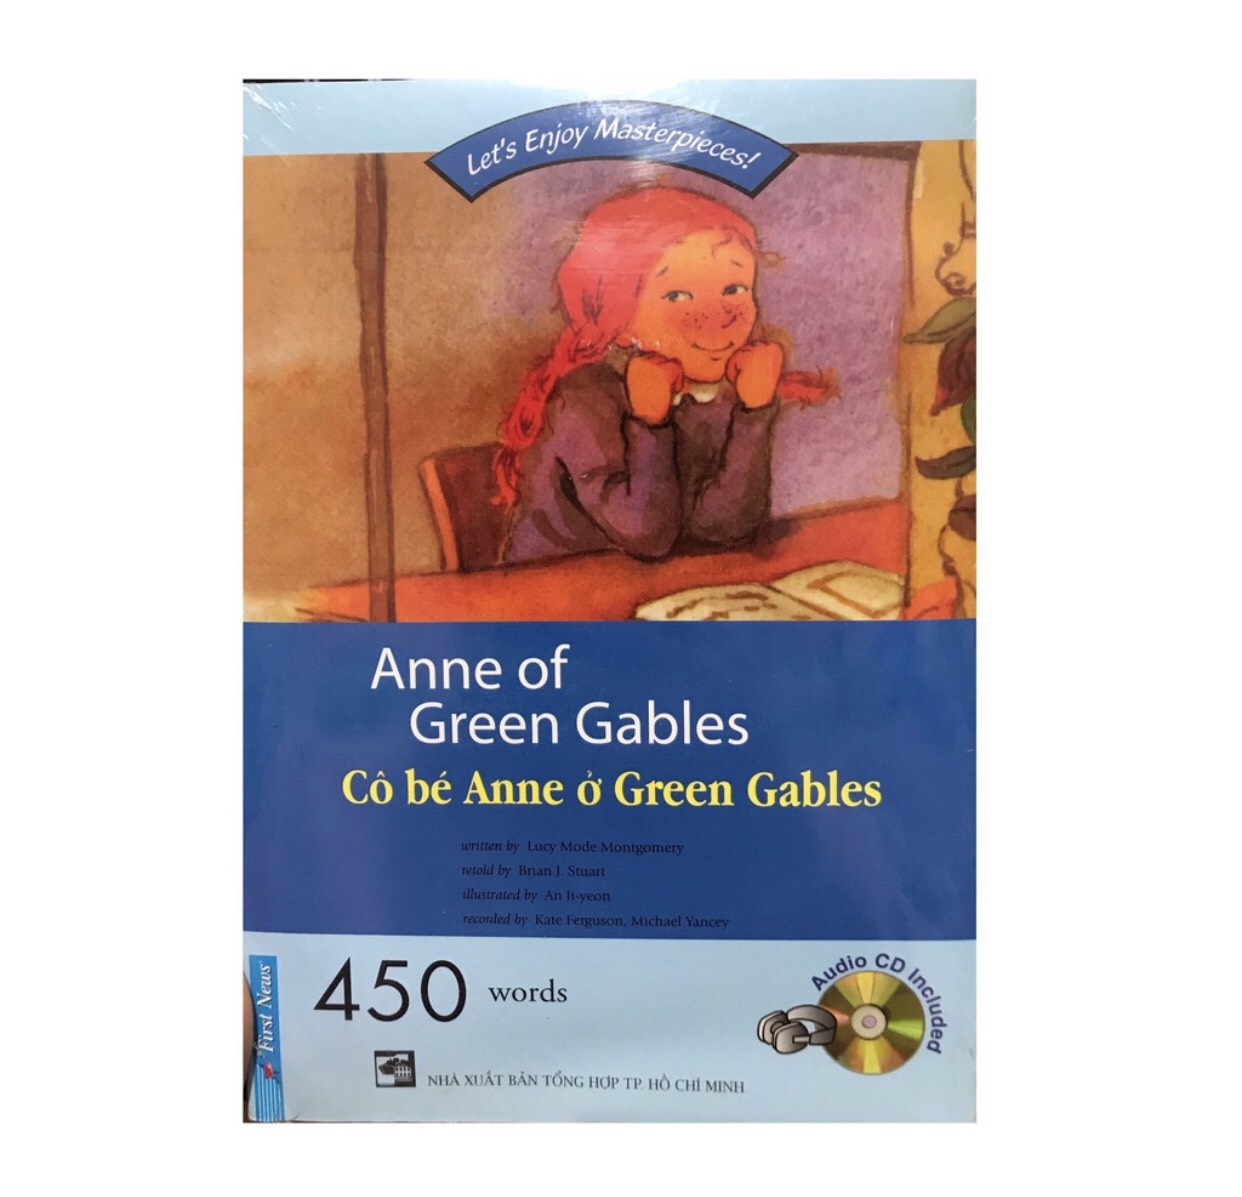 Anne of Green Gables là một câu chuyện kinh điển, lôi cuốn đến từng trang sách. Hãy khám phá bức ảnh liên quan để đắm chìm trong cảm xúc và kỷ niệm tuyệt vời từ truyện này. Bạn sẽ phải thán phục trước sự sáng tạo và tài năng của tác giả khi đọc xong truyện.